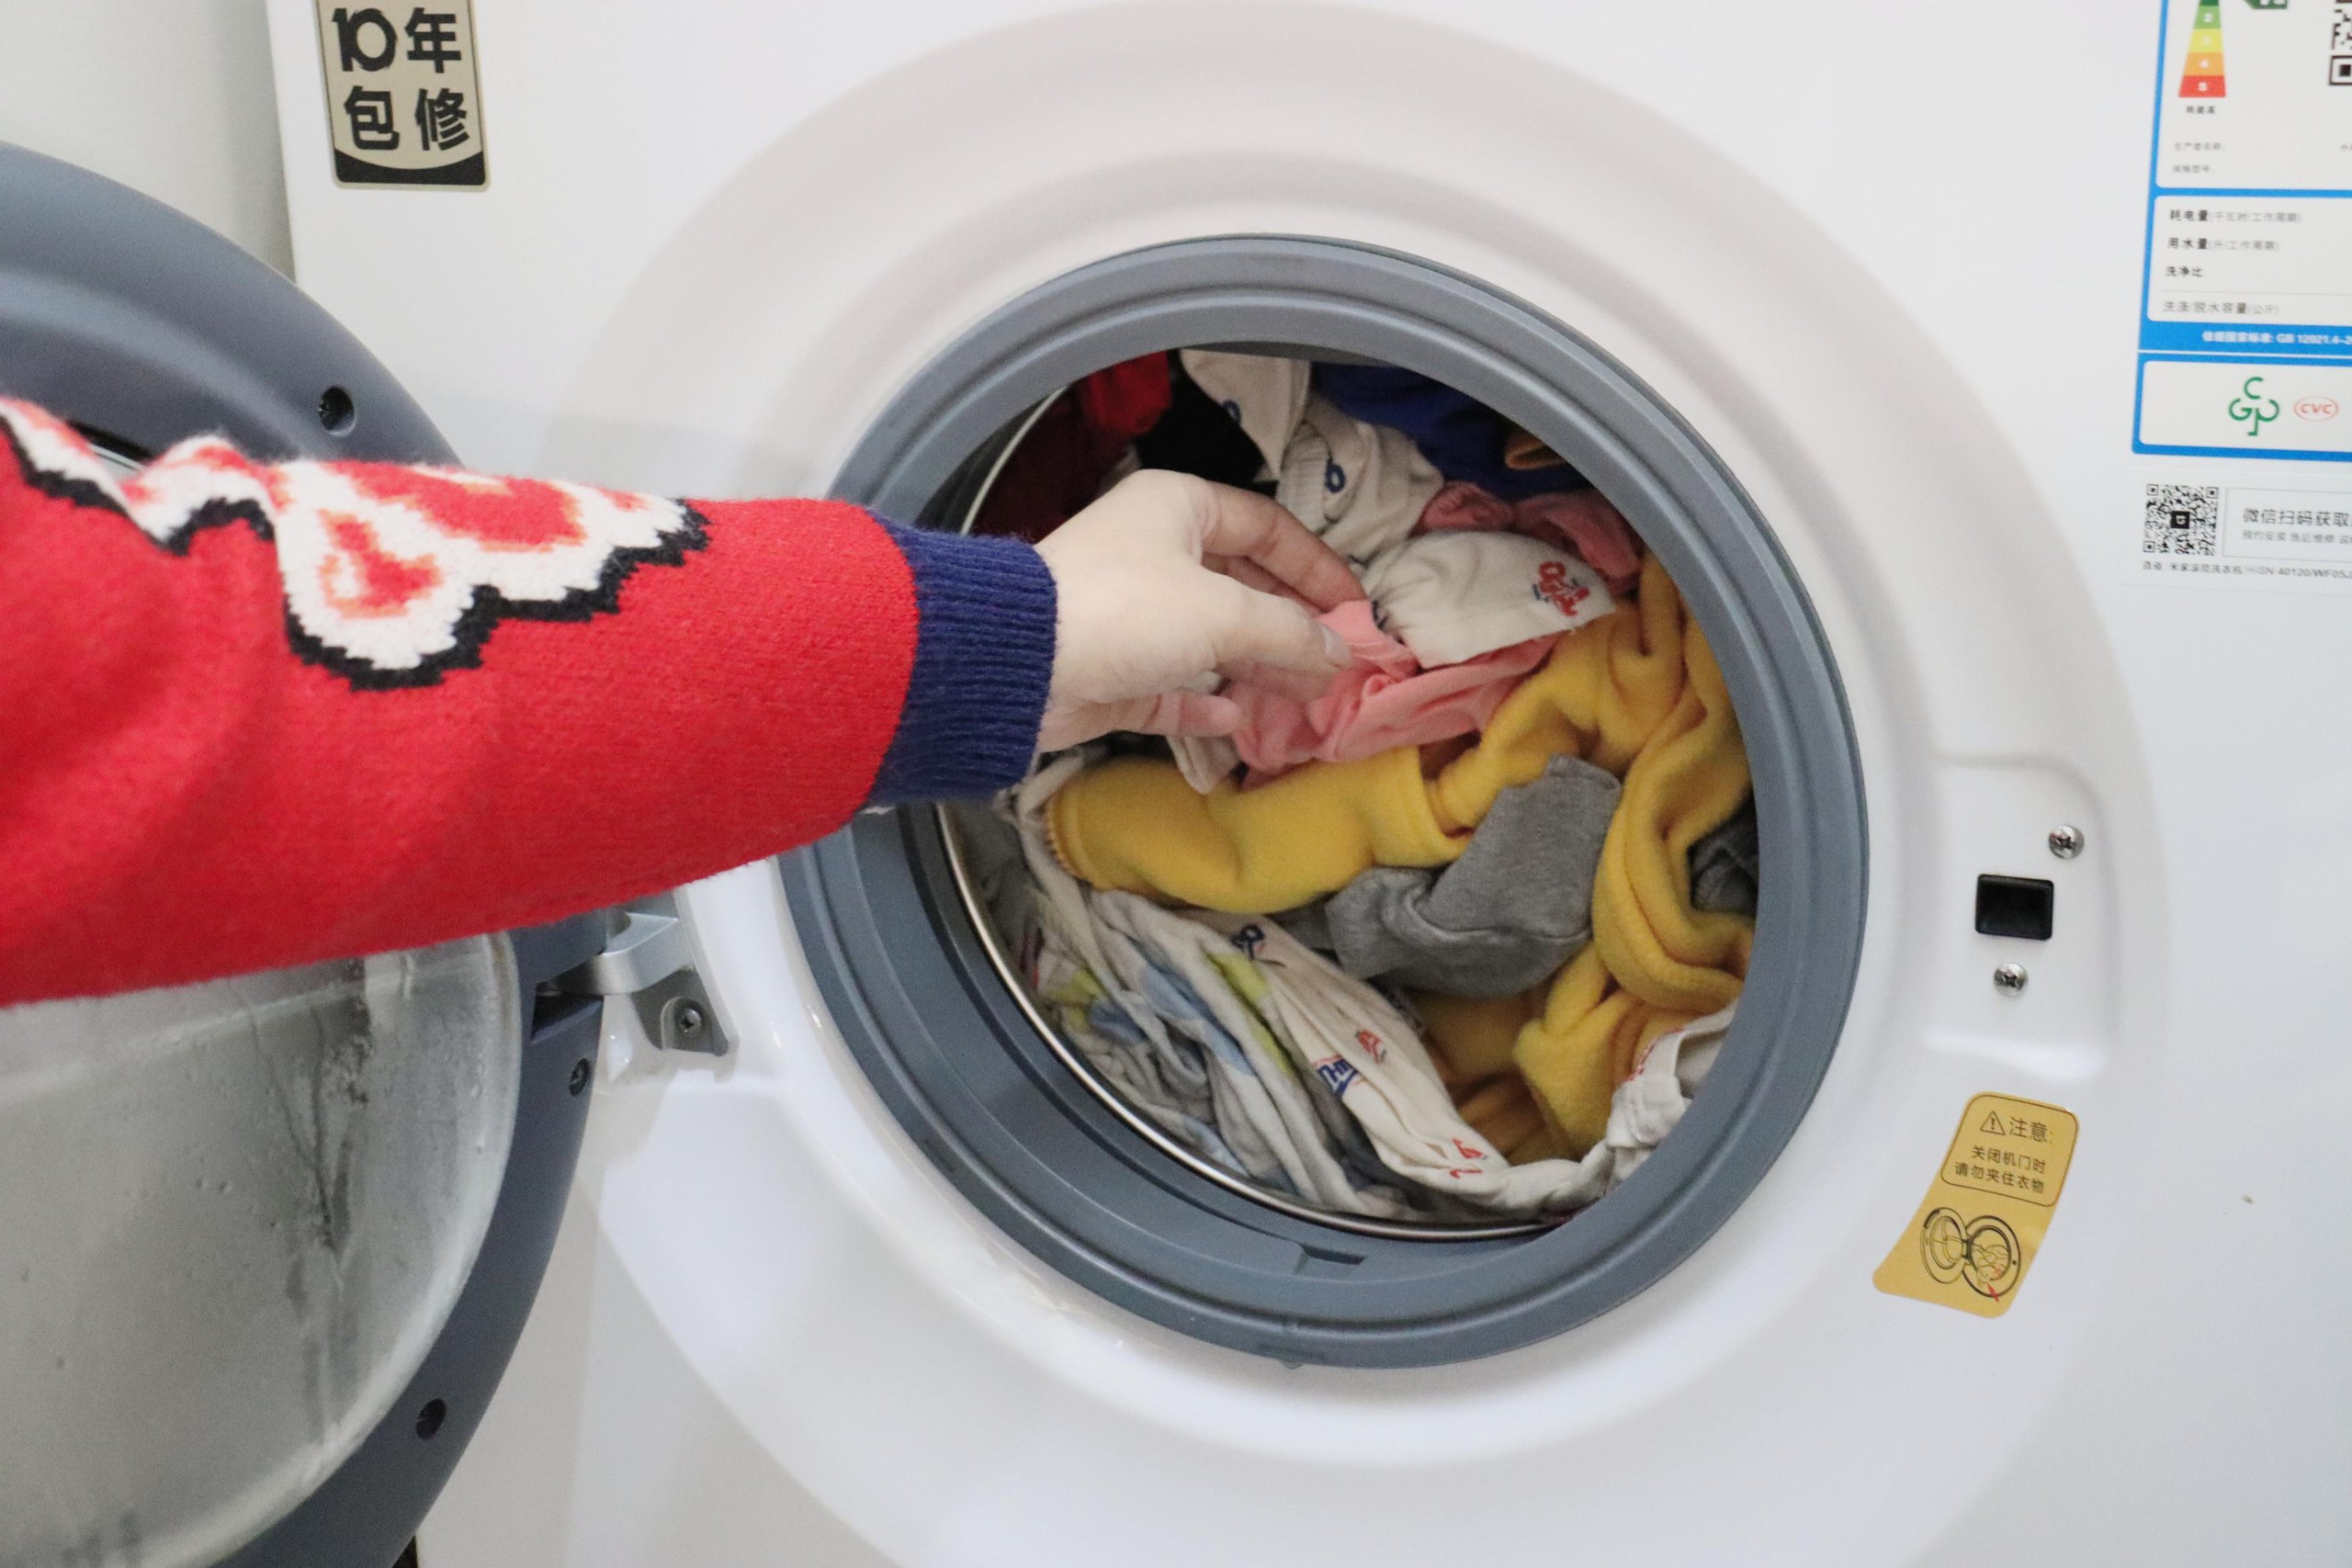 Chữ “KG” trên máy giặt ám chỉ trọng lượng quần áo khô hay trọng lượng quần áo ướt? Rất nhiều người đã nhầm - Ảnh 2.